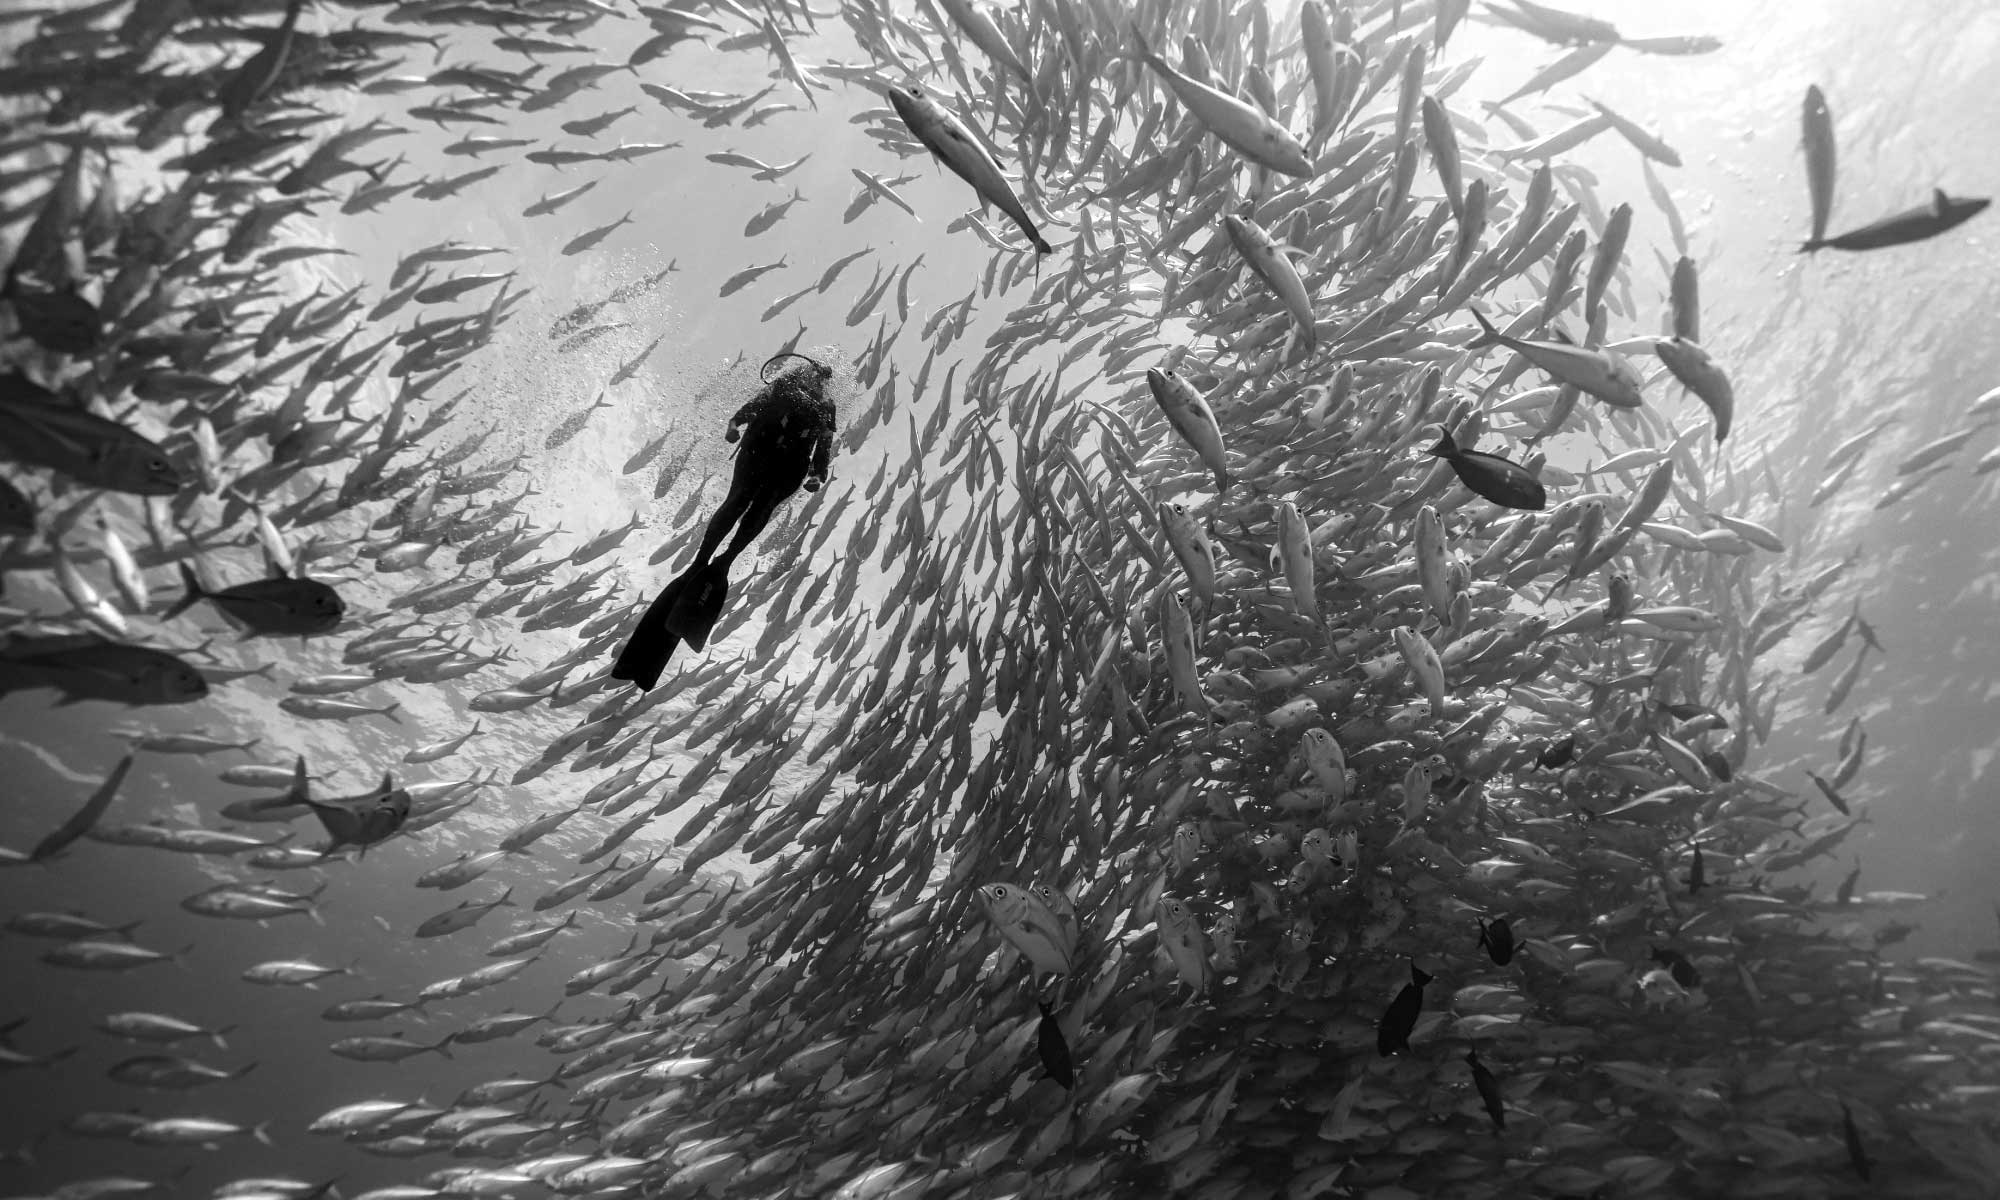 Sea of Cortez - Scuba Diving